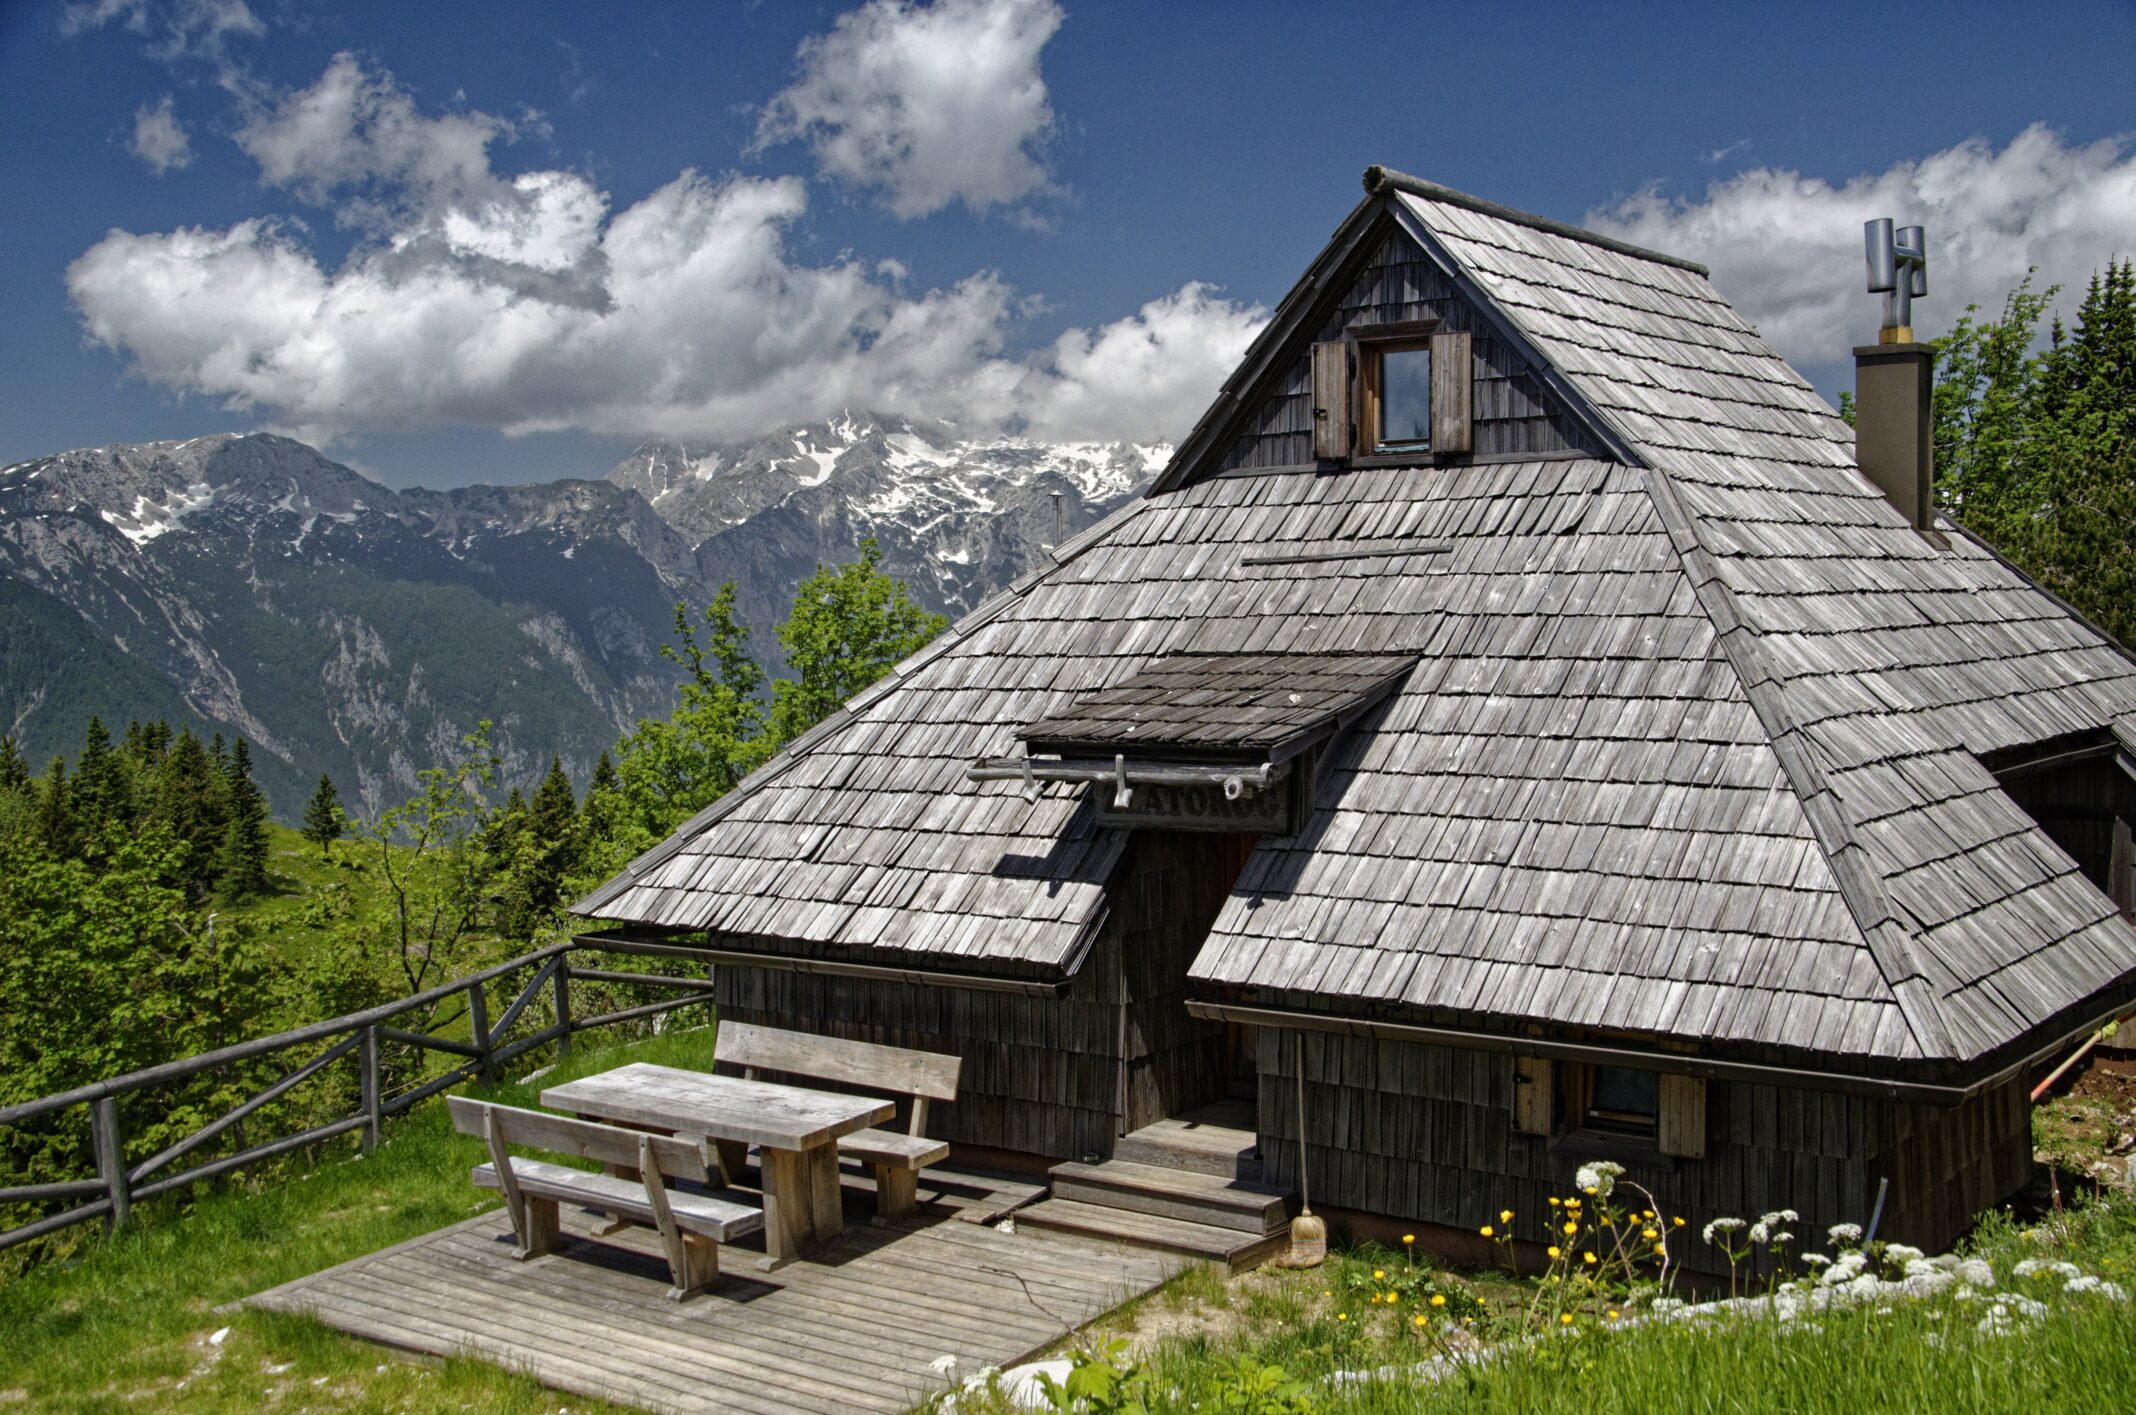 Pravljica / Fairytale - Velika planina - Fotoshooting za Alpine